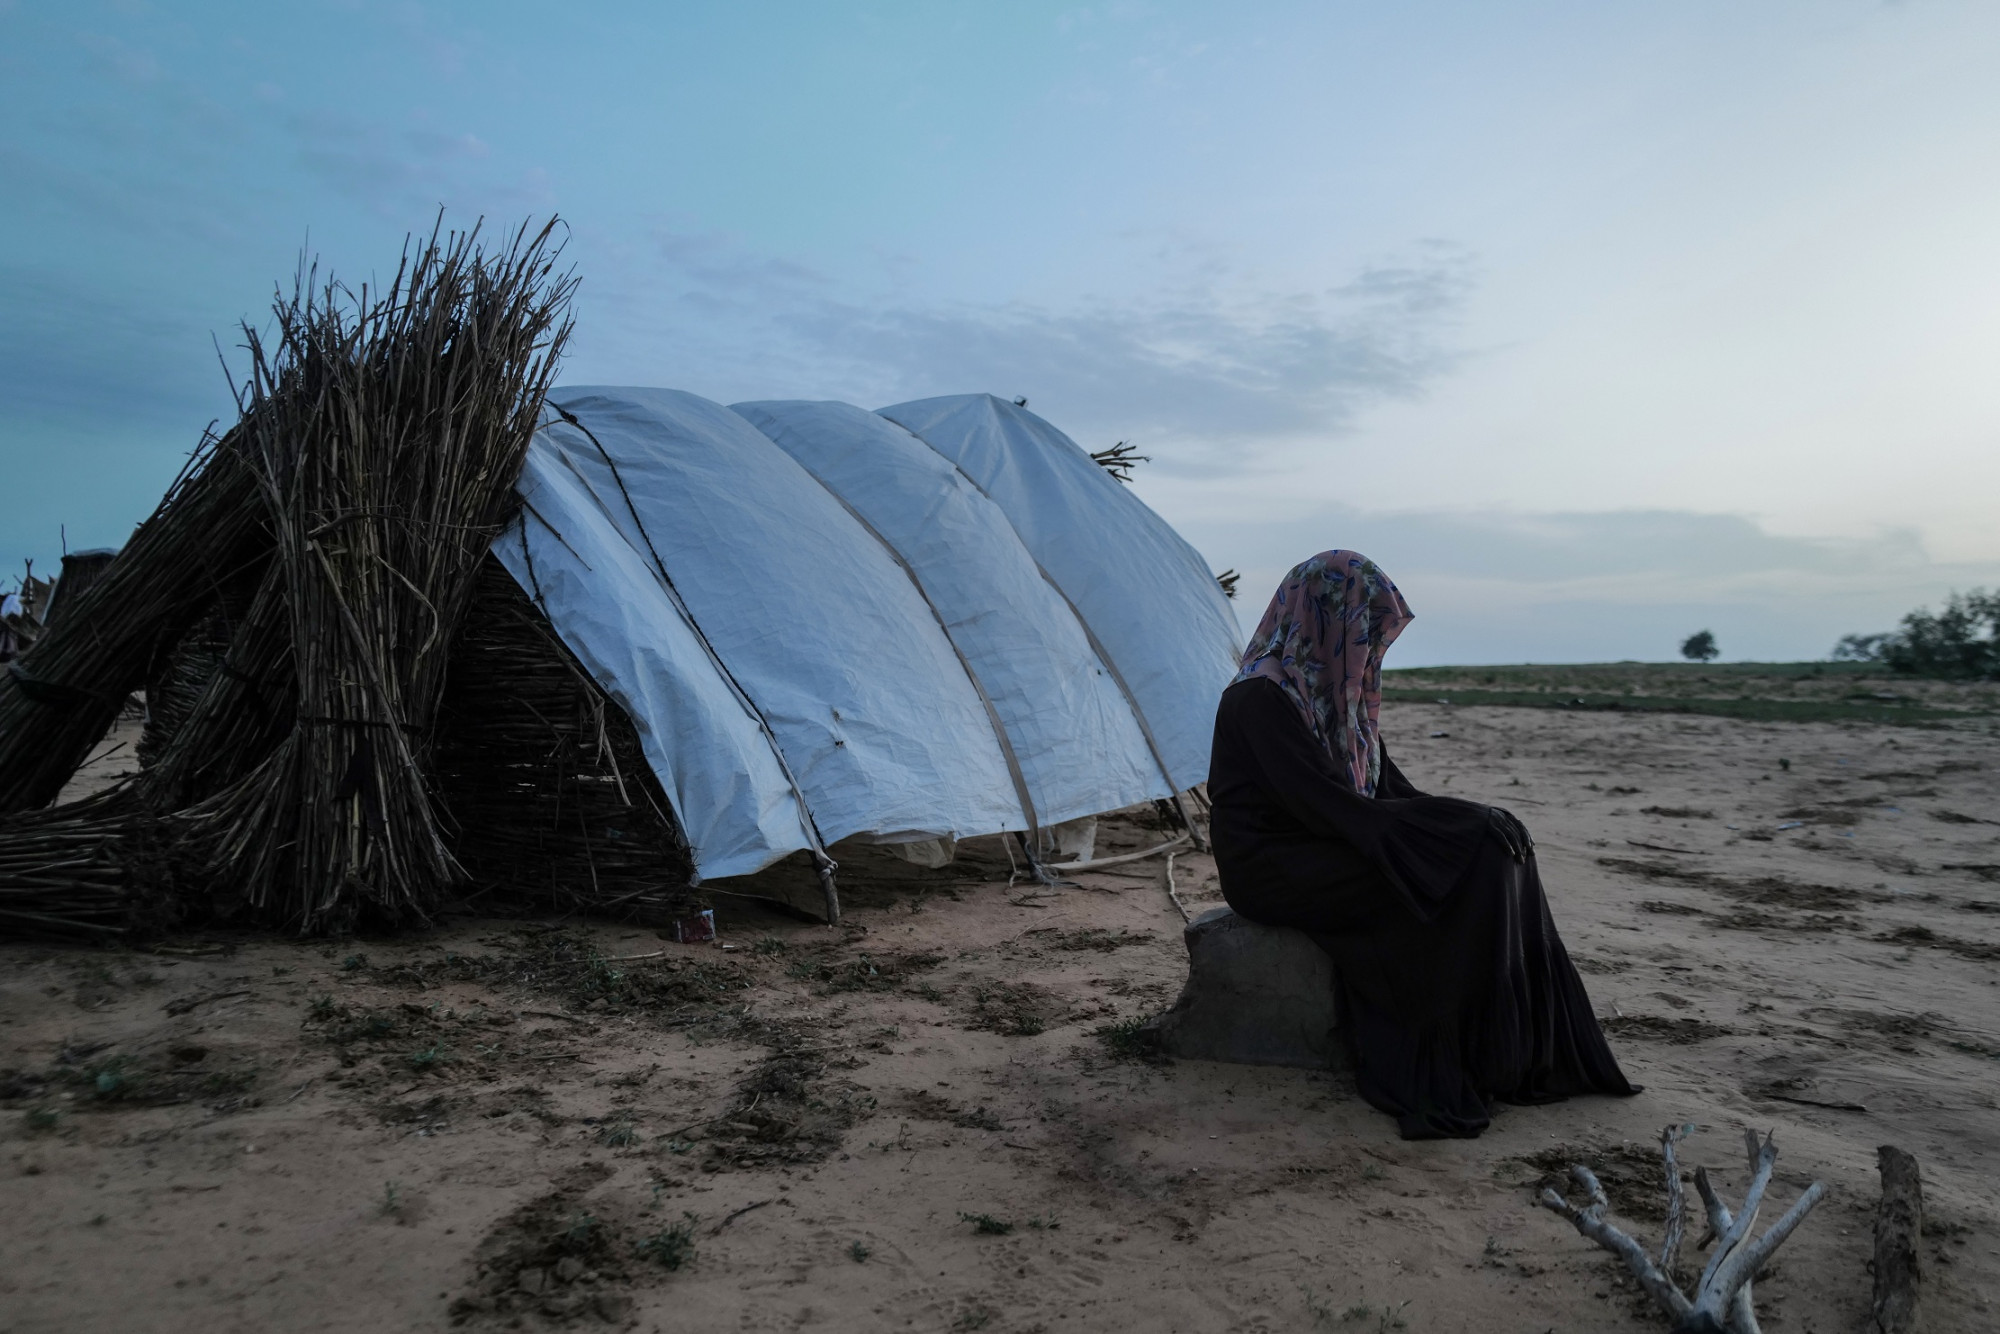 Một nạn nhân 15 tuổi kể lại hành trình kinh hoàng khi trốn chạy khỏi El Geneina. Em và một bé gái khác cùng bị cưỡng bức, trước khi nhóm lính RSF giết người bạn của em. Hiện em đang trú tạm tại một trại tị nạn ở Chad.